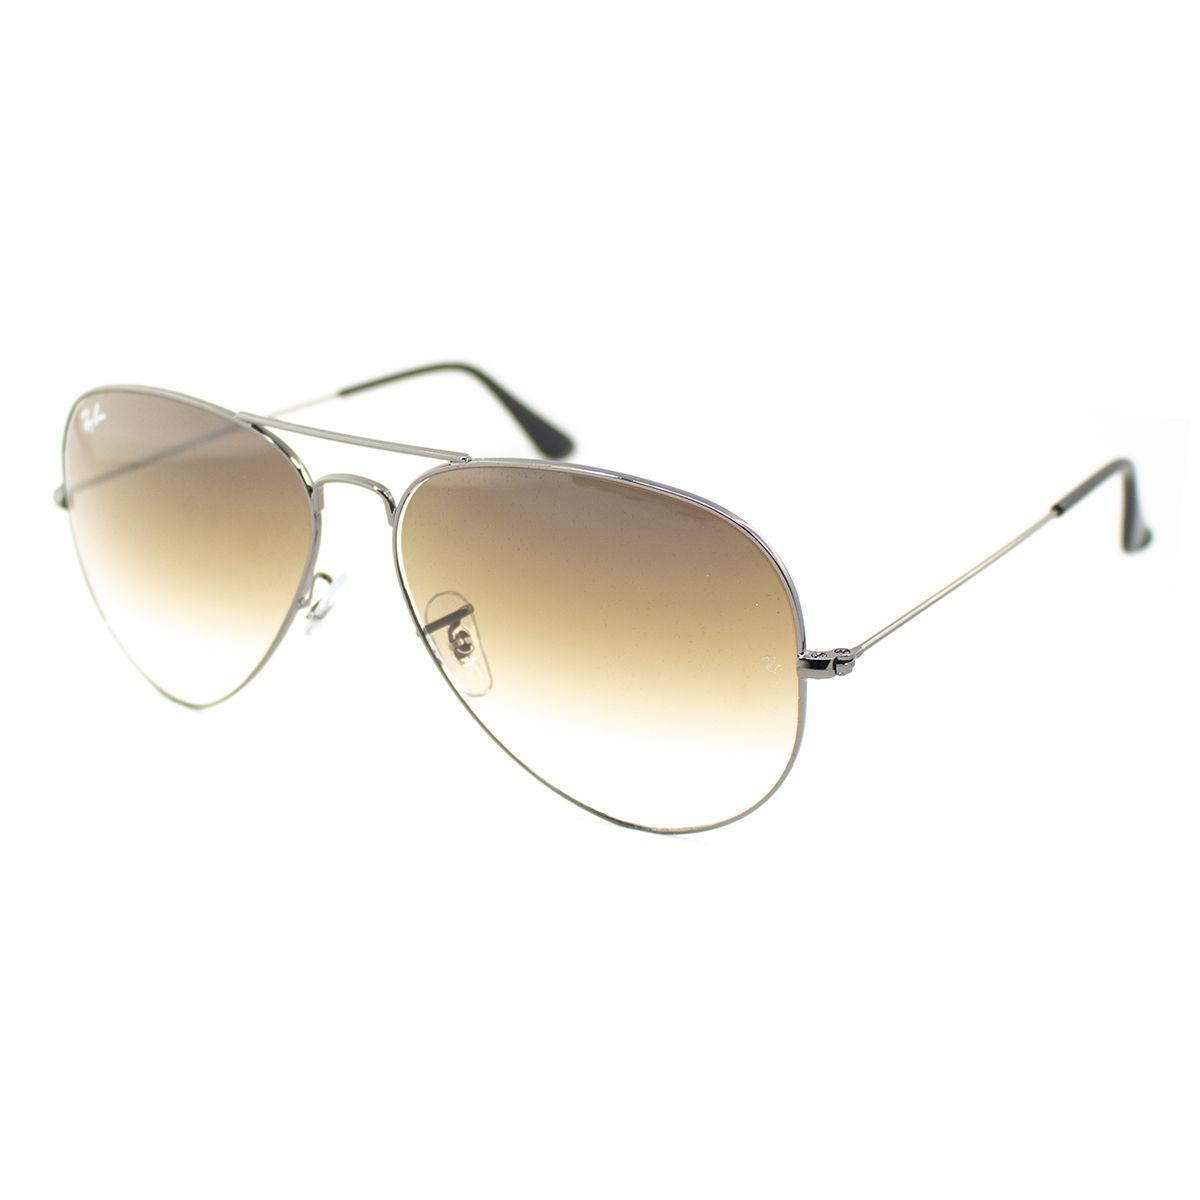 Aviator Sunglasses RB3025 004 51 - size 62